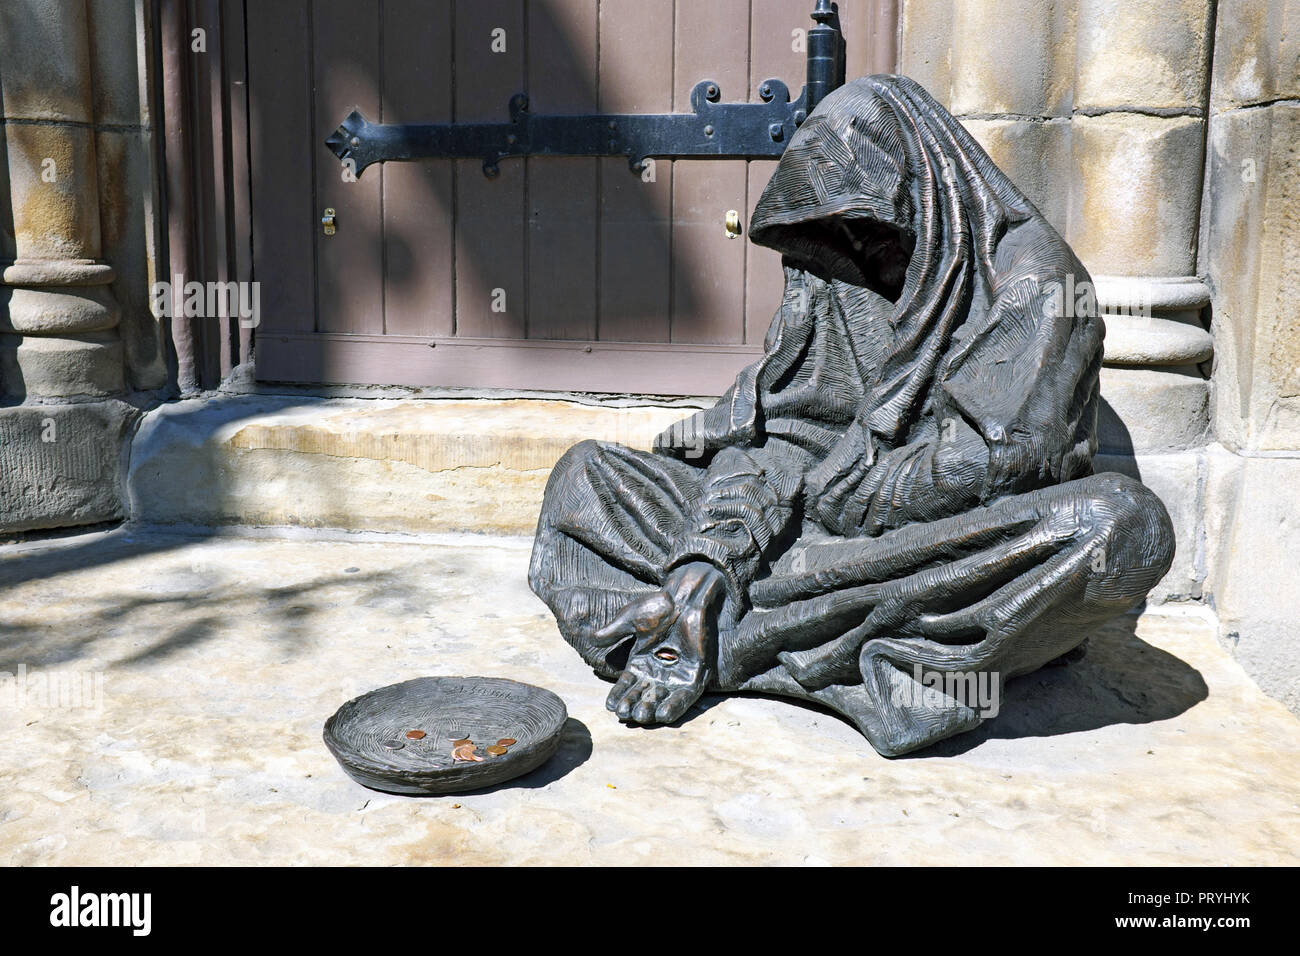 Jésus le mendiant sculpture basé sur Matthieu 25:40, créé par Timothy Schmalz, est assis à l'extérieur de la vieille église en pierre à Cleveland, Ohio, USA. Banque D'Images